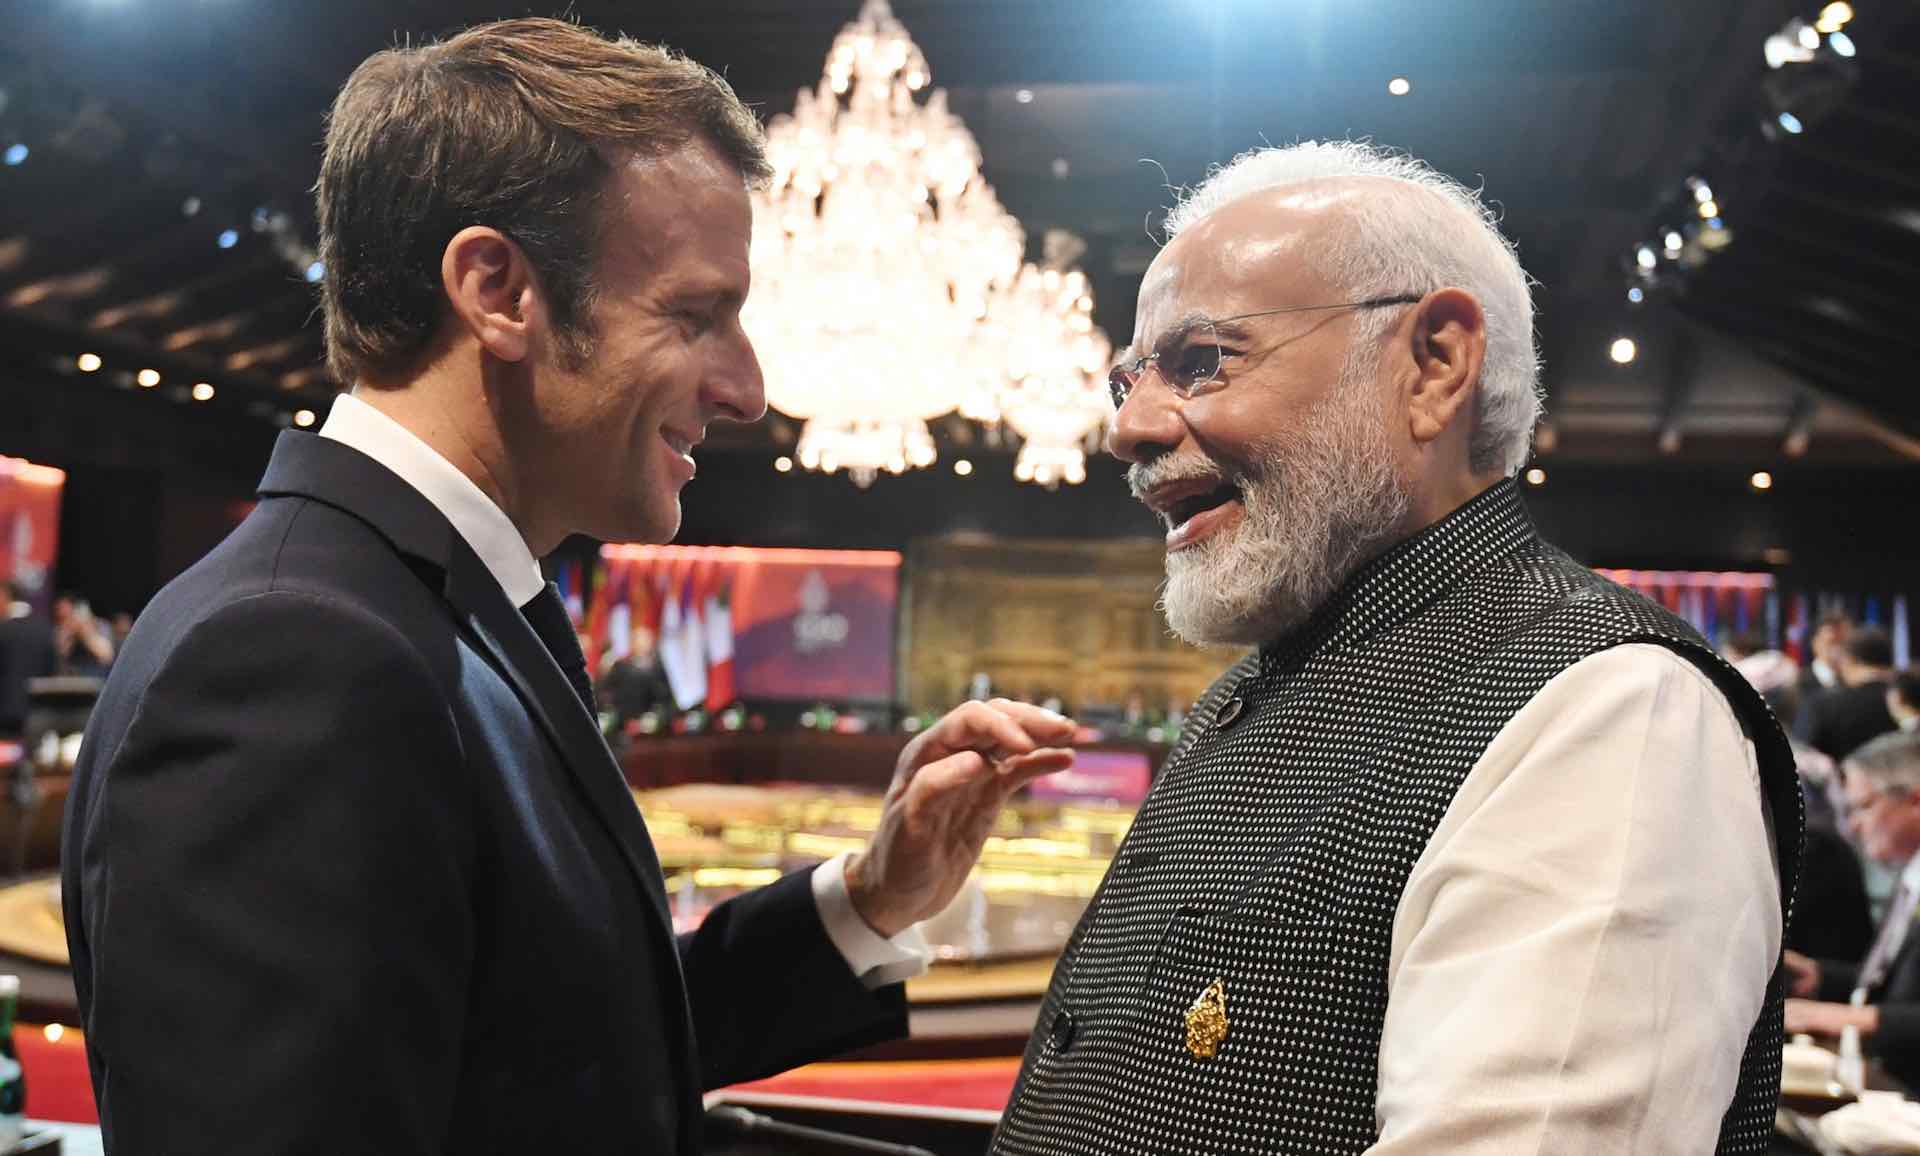 Modi meets G-20 leaders, attends dinner hosted by Joko Widodo